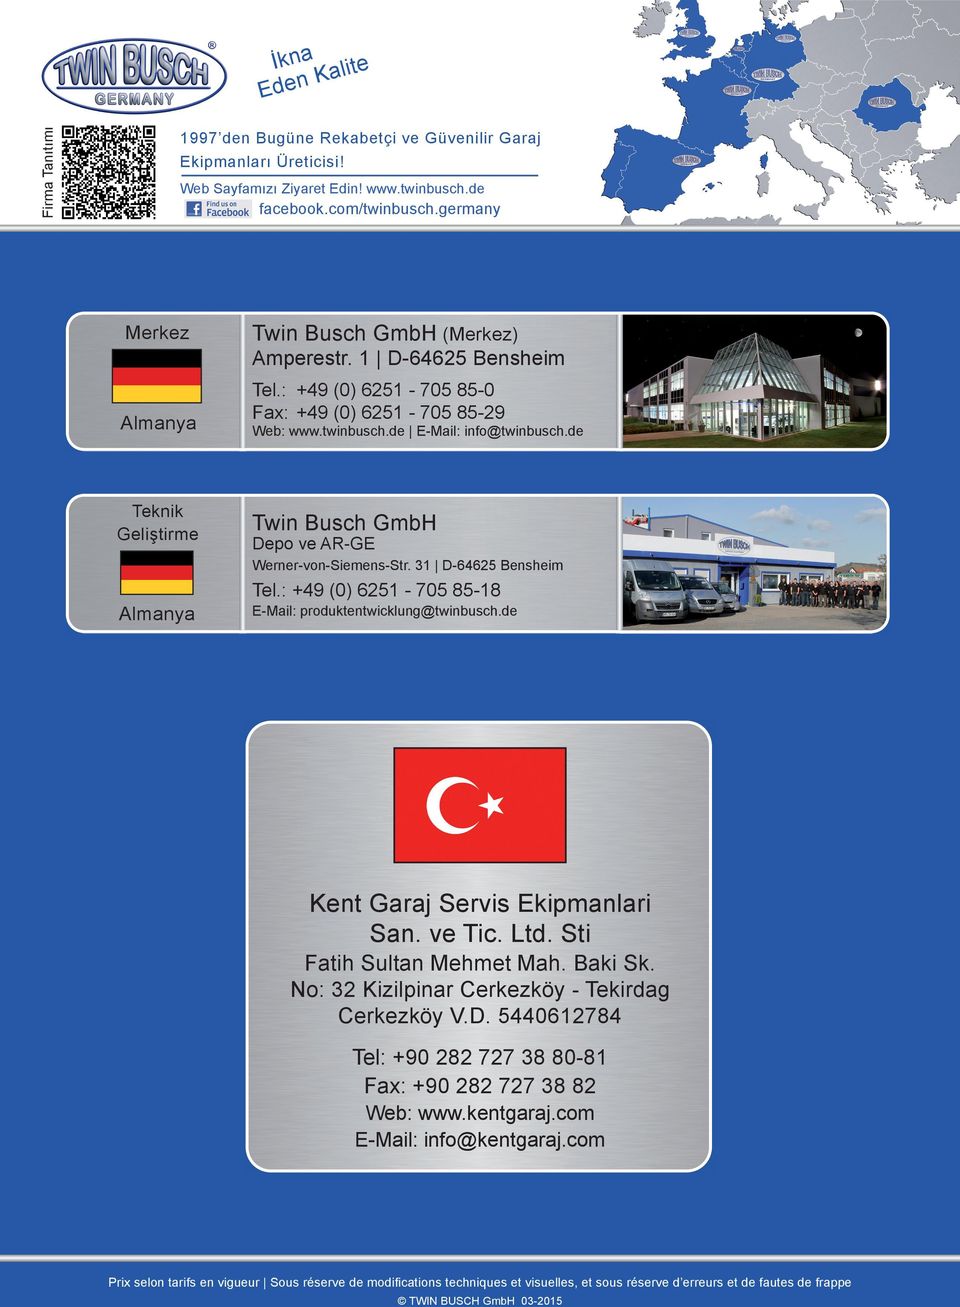 de Twin Busch GmbH Depo ve AR-GE Werner-von-Siemens-Str. 31 D-64625 Bensheim Almanya Tel.: +49 (0) 6251-705 85-18 E-Mail: produktentwicklung@twinbusch.de Kent Garaj Servis Ekipmanlari San. ve Tic.